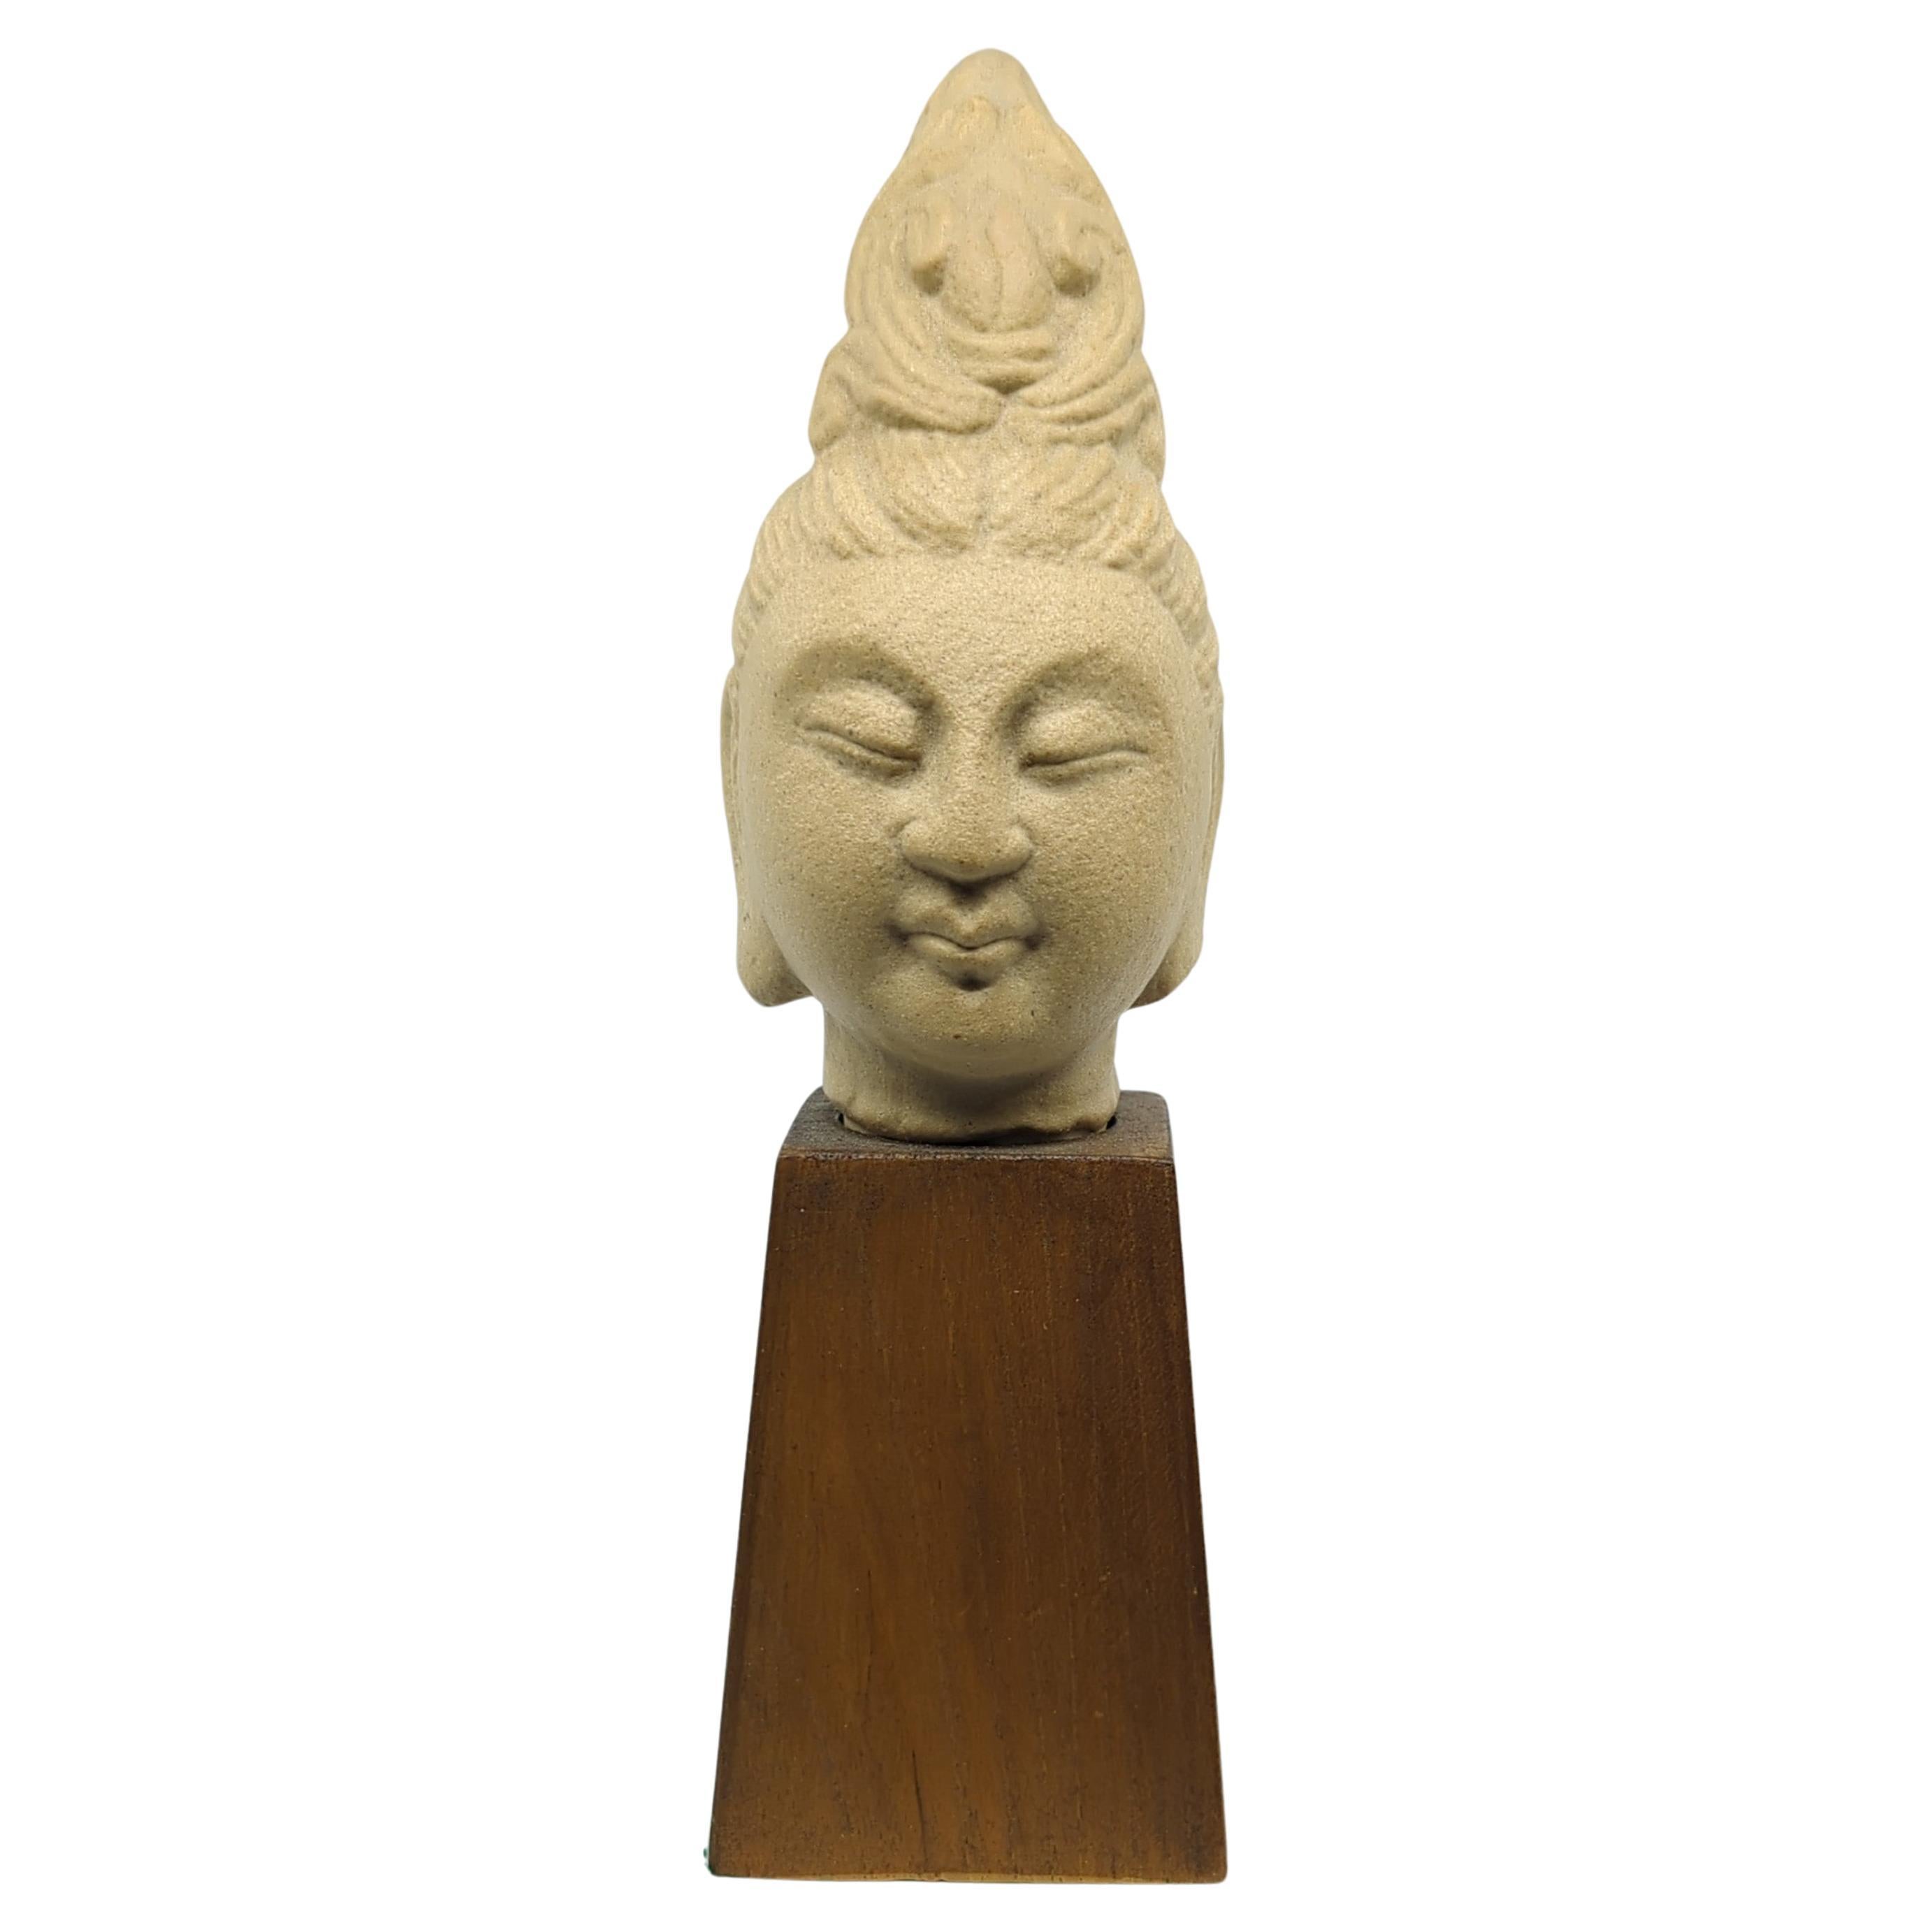 Diese chinesische Keramikbüste von Kwan Yin (Guanyin), dem in der buddhistischen Tradition verehrten Bodhisattva des Mitgefühls, ist eine wunderschön gearbeitete Darstellung von spiritueller Gelassenheit und Anmut. Die Büste fängt die Essenz von